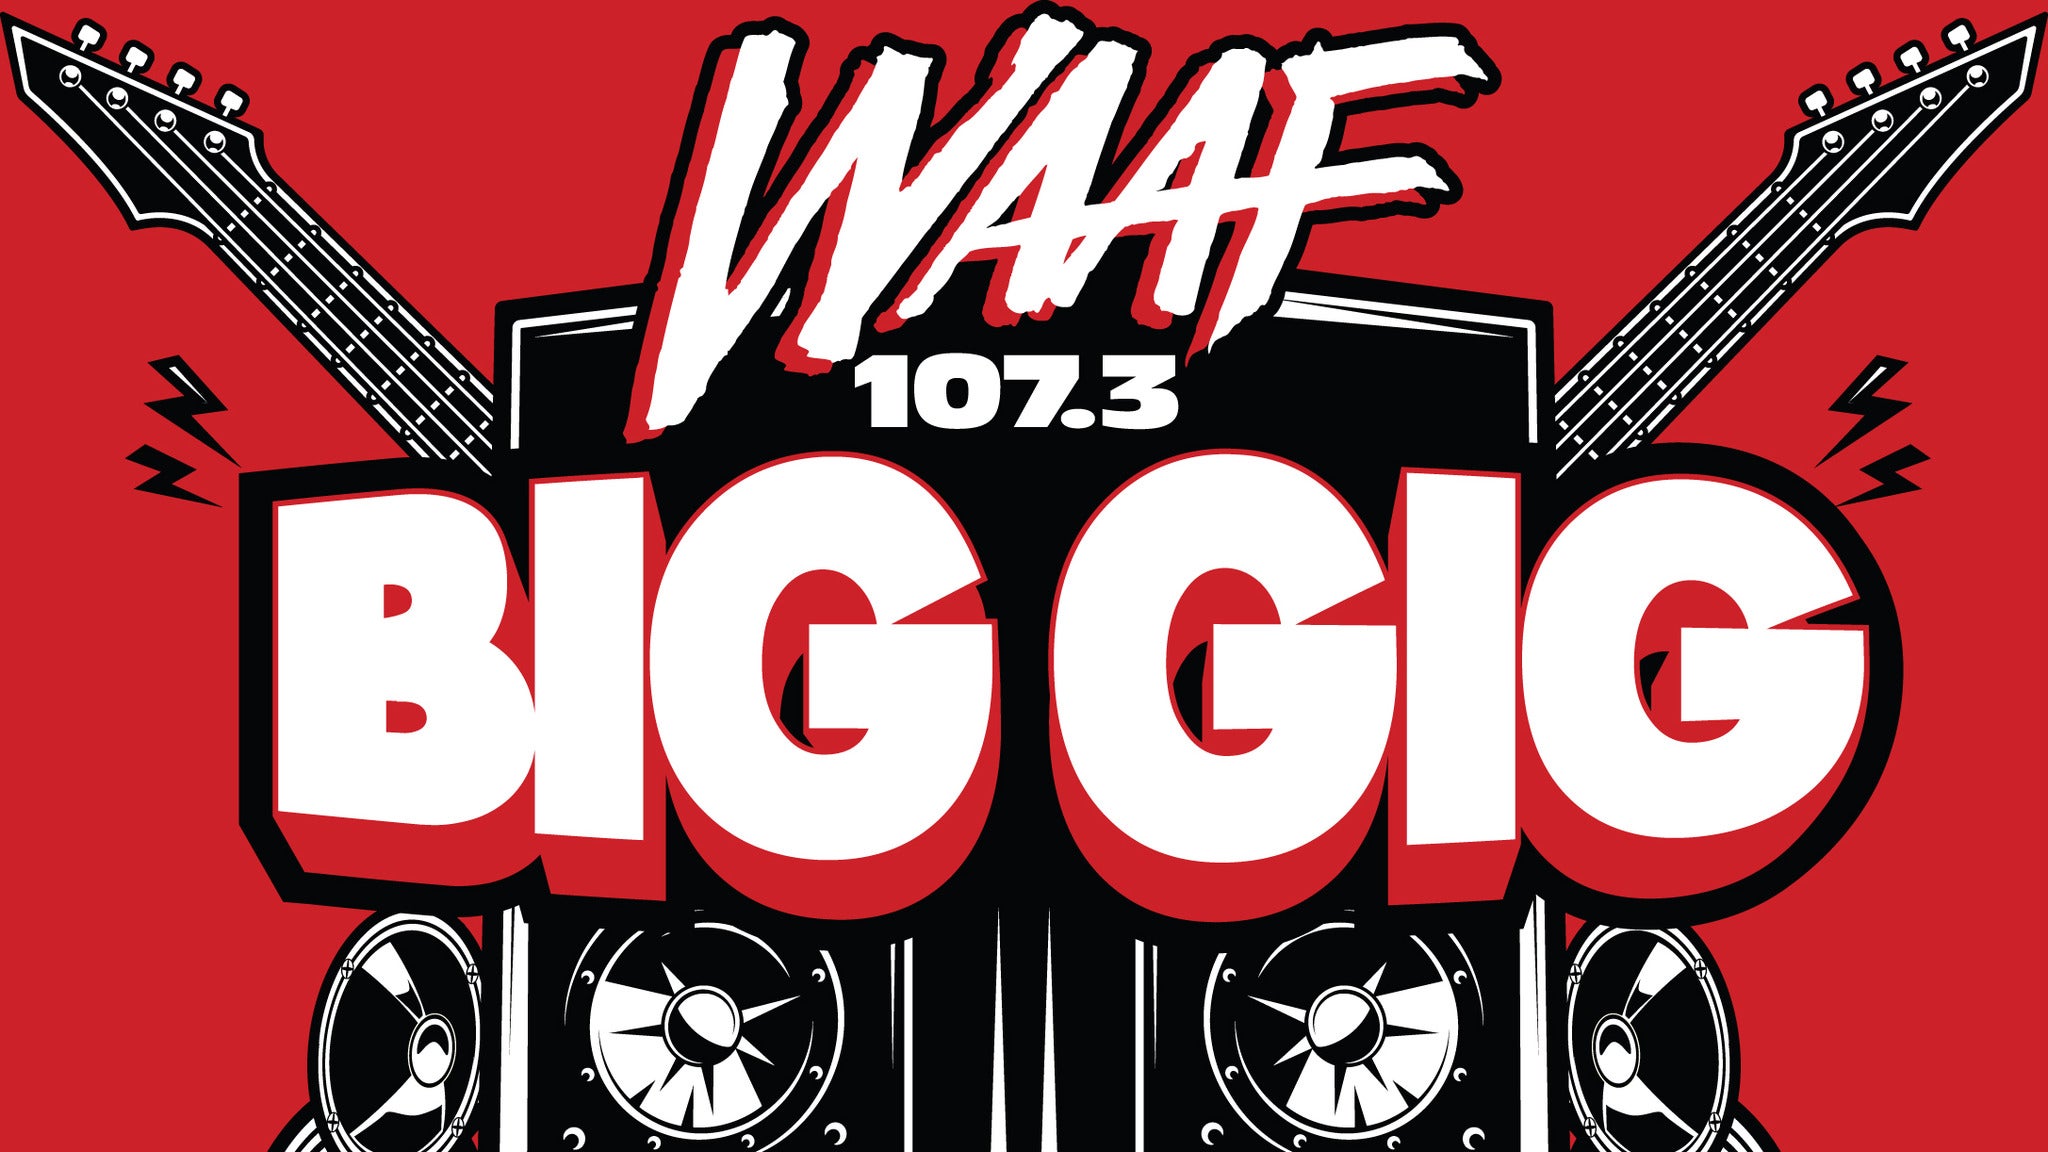 WAAF Big GIG featuring Godsmack in Worcester event information